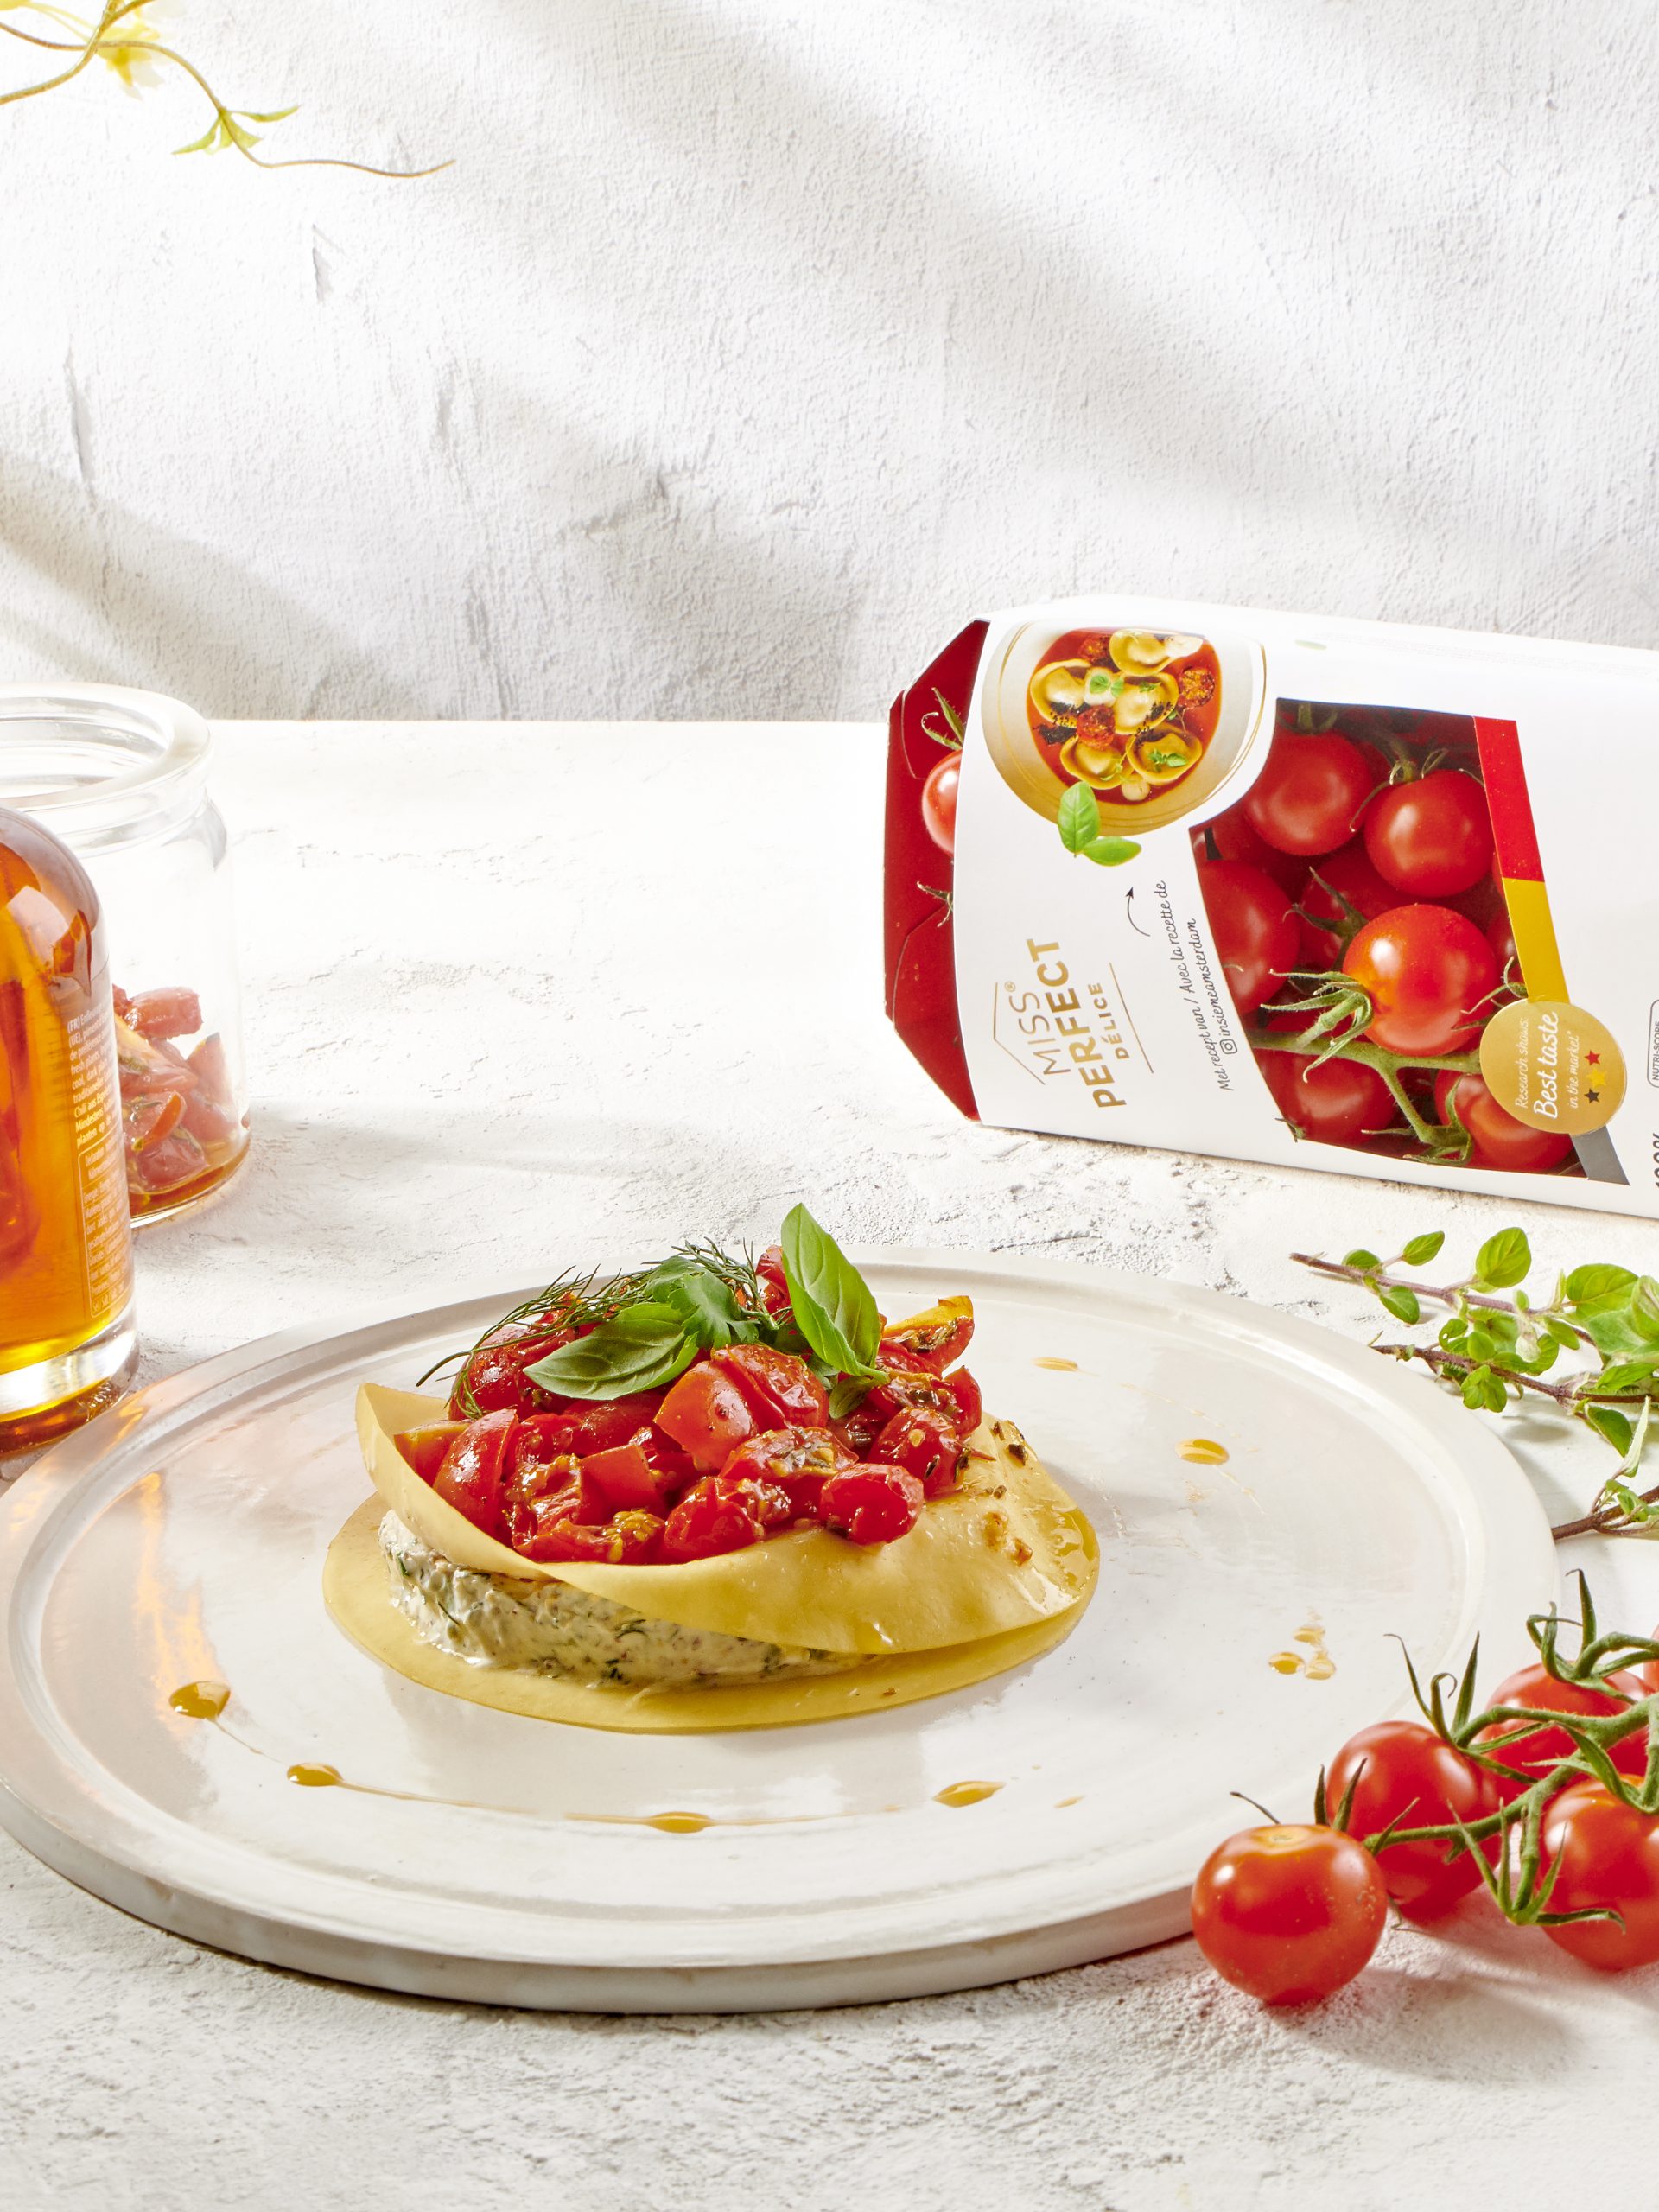 Kruidenlasagne met Miss Perfect Délice tomaten van Hoogstraten #advertentie